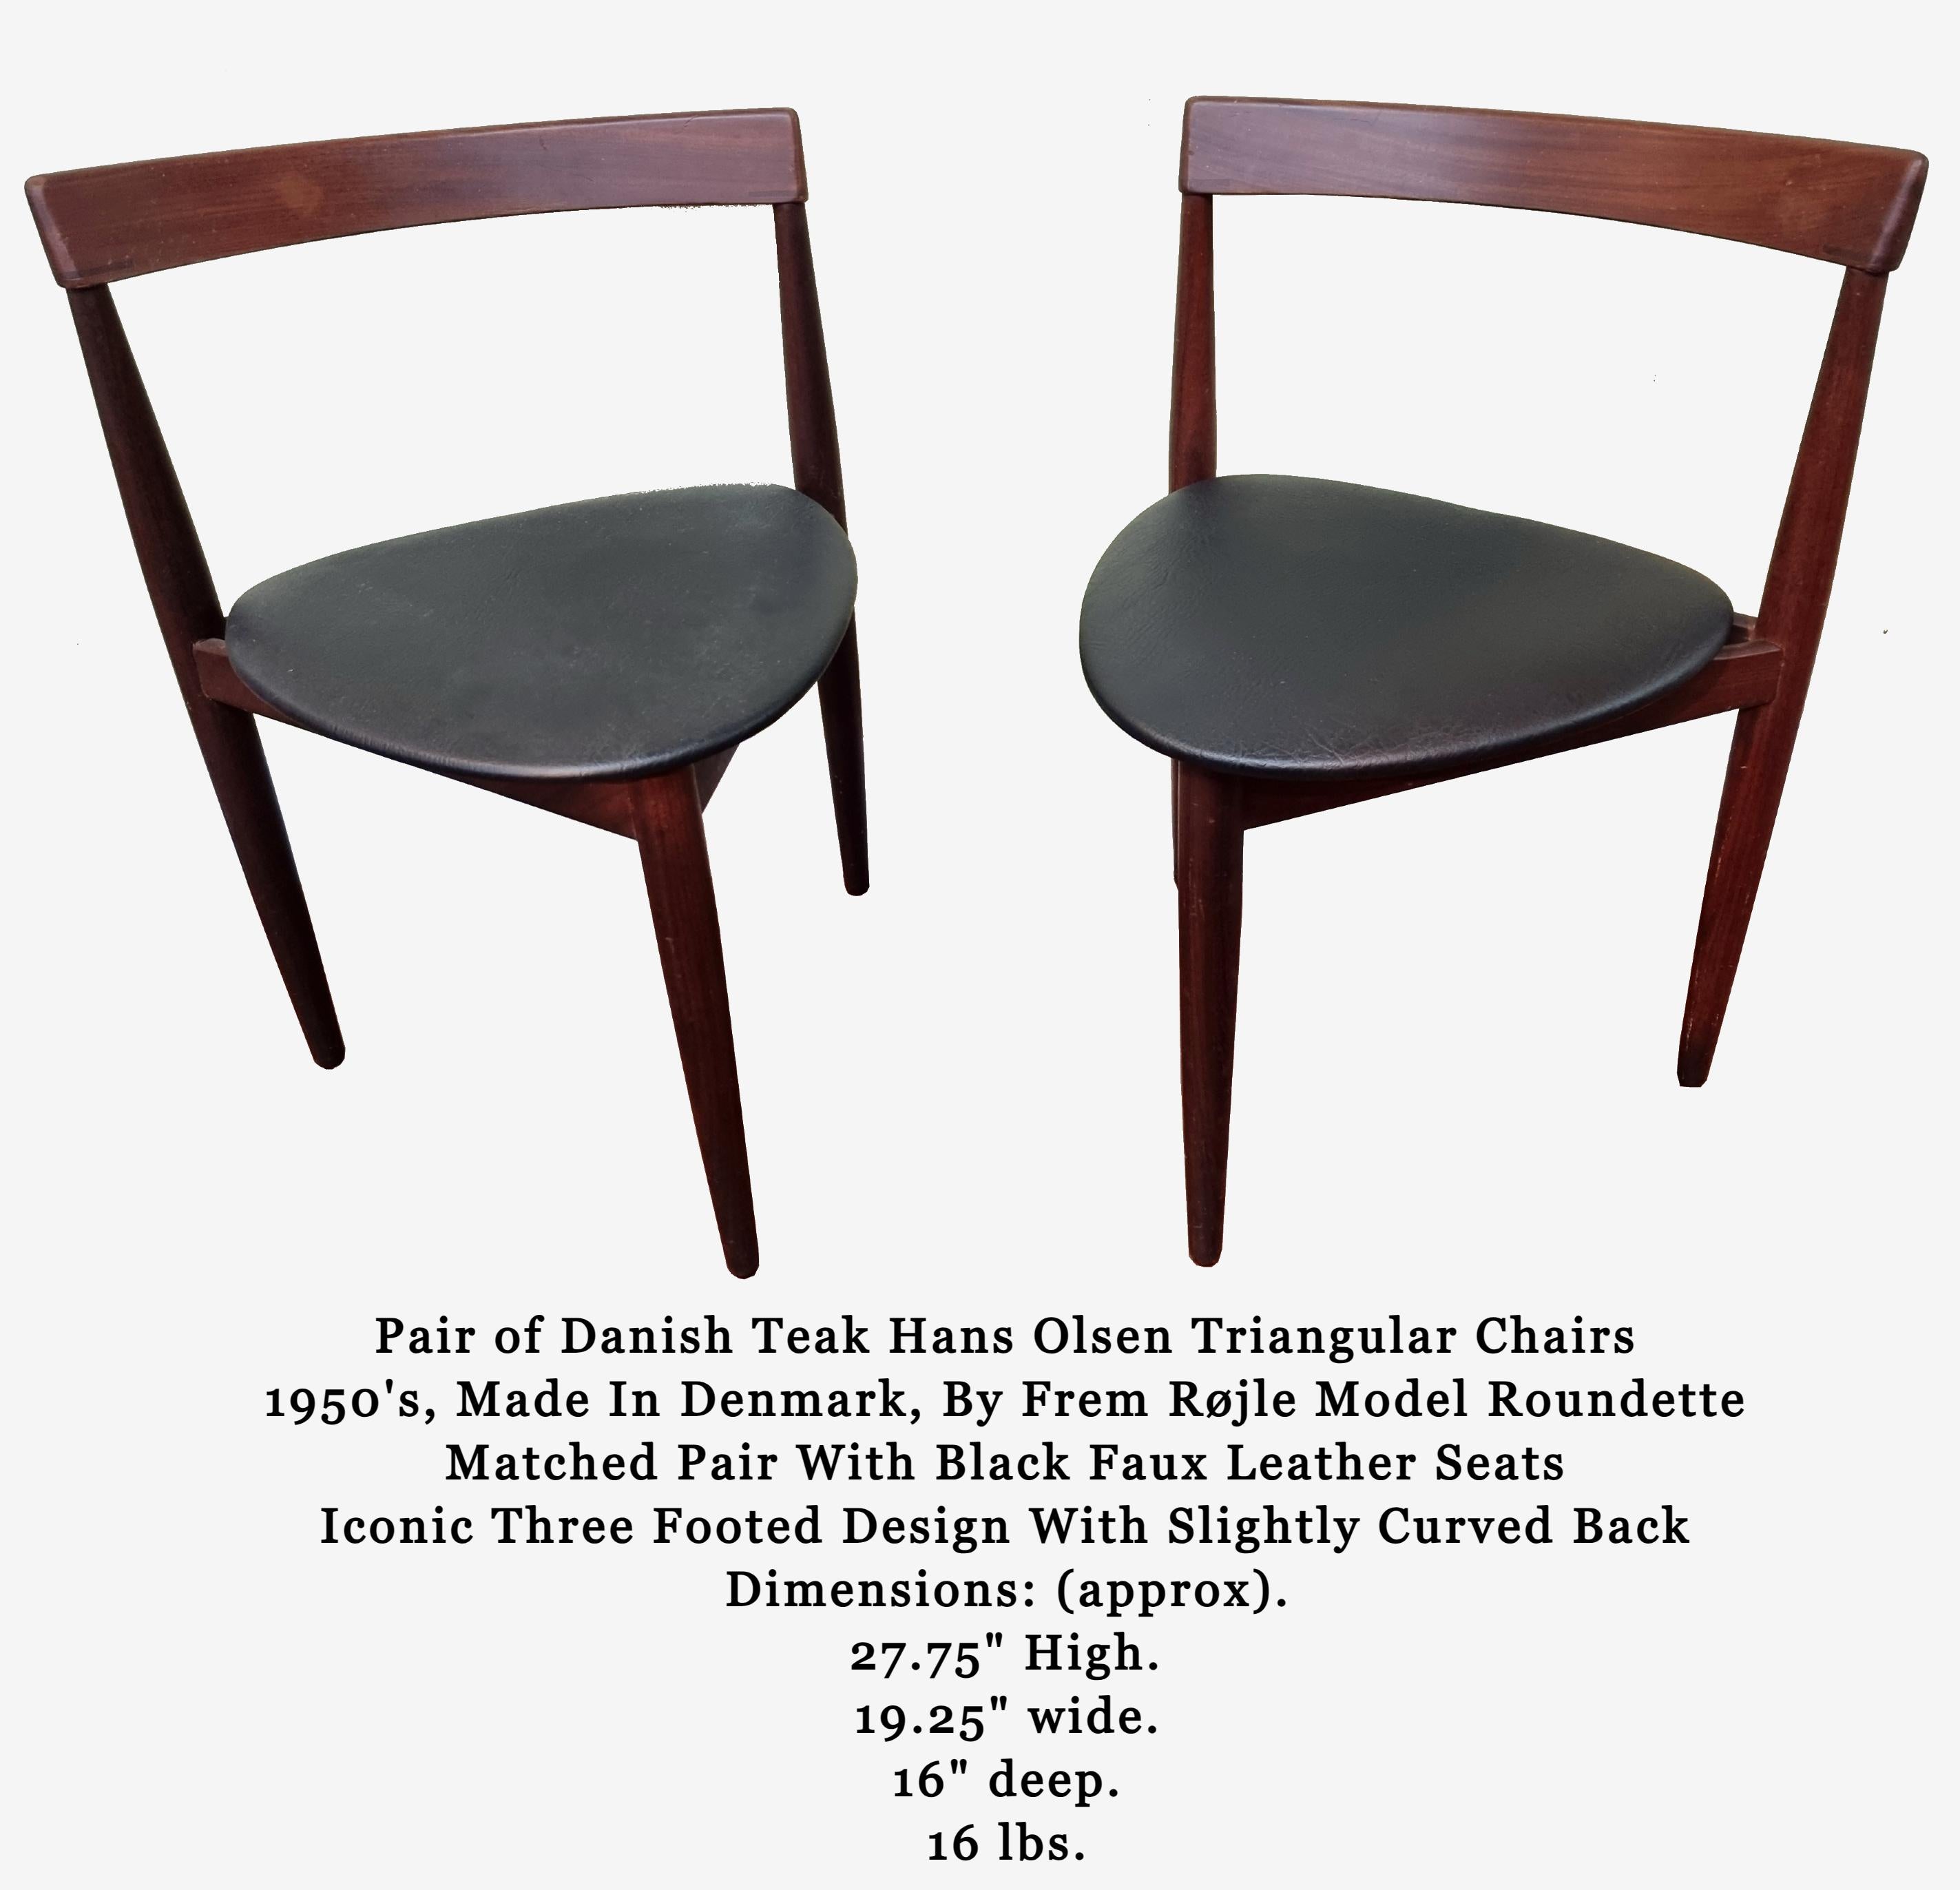 Paire de chaises triangulaires danoises en teck Hans Olsen des années 1950, fabriquées au Danemark, par Frem Røjle, modèle Roundette.
Paire assortie de sièges en similicuir noir
Design/One iconique à trois pieds avec dos légèrement